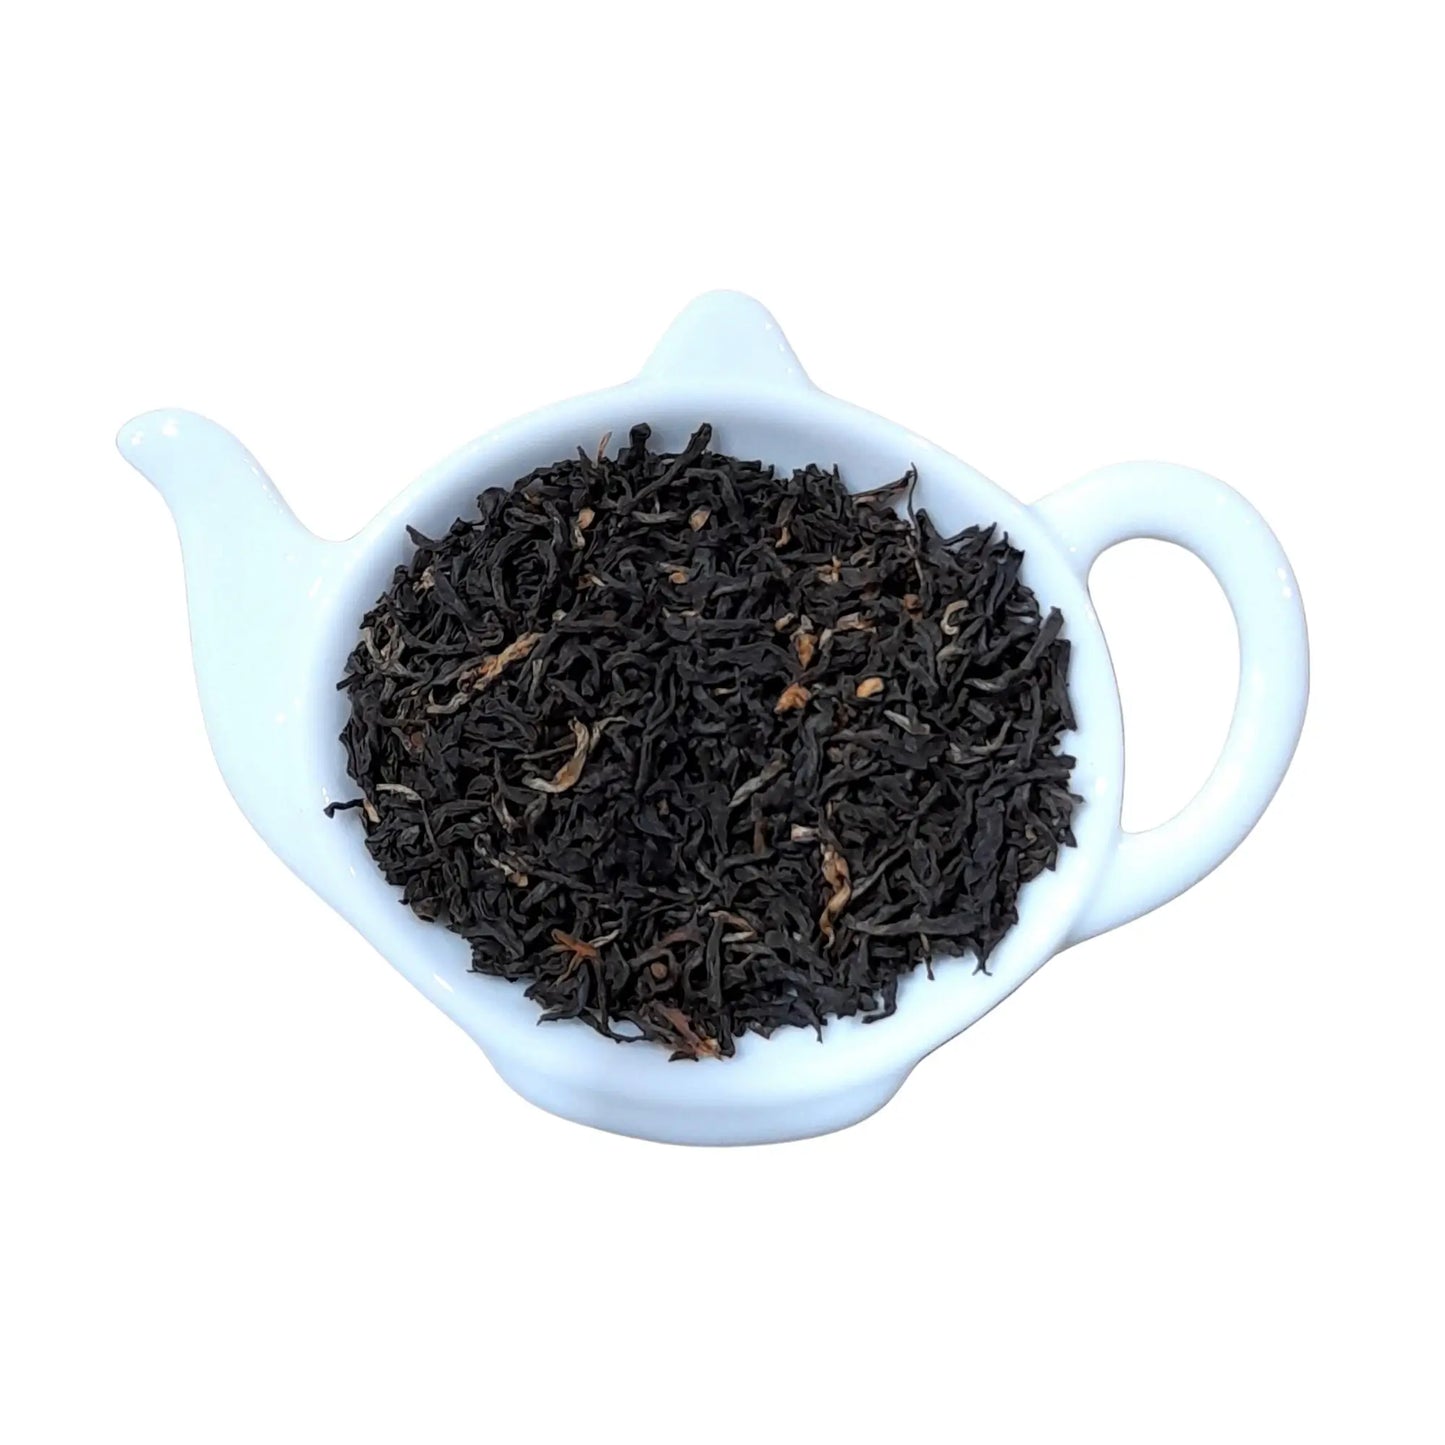 Zwarte Assam thee, een krachtige zwarte thee